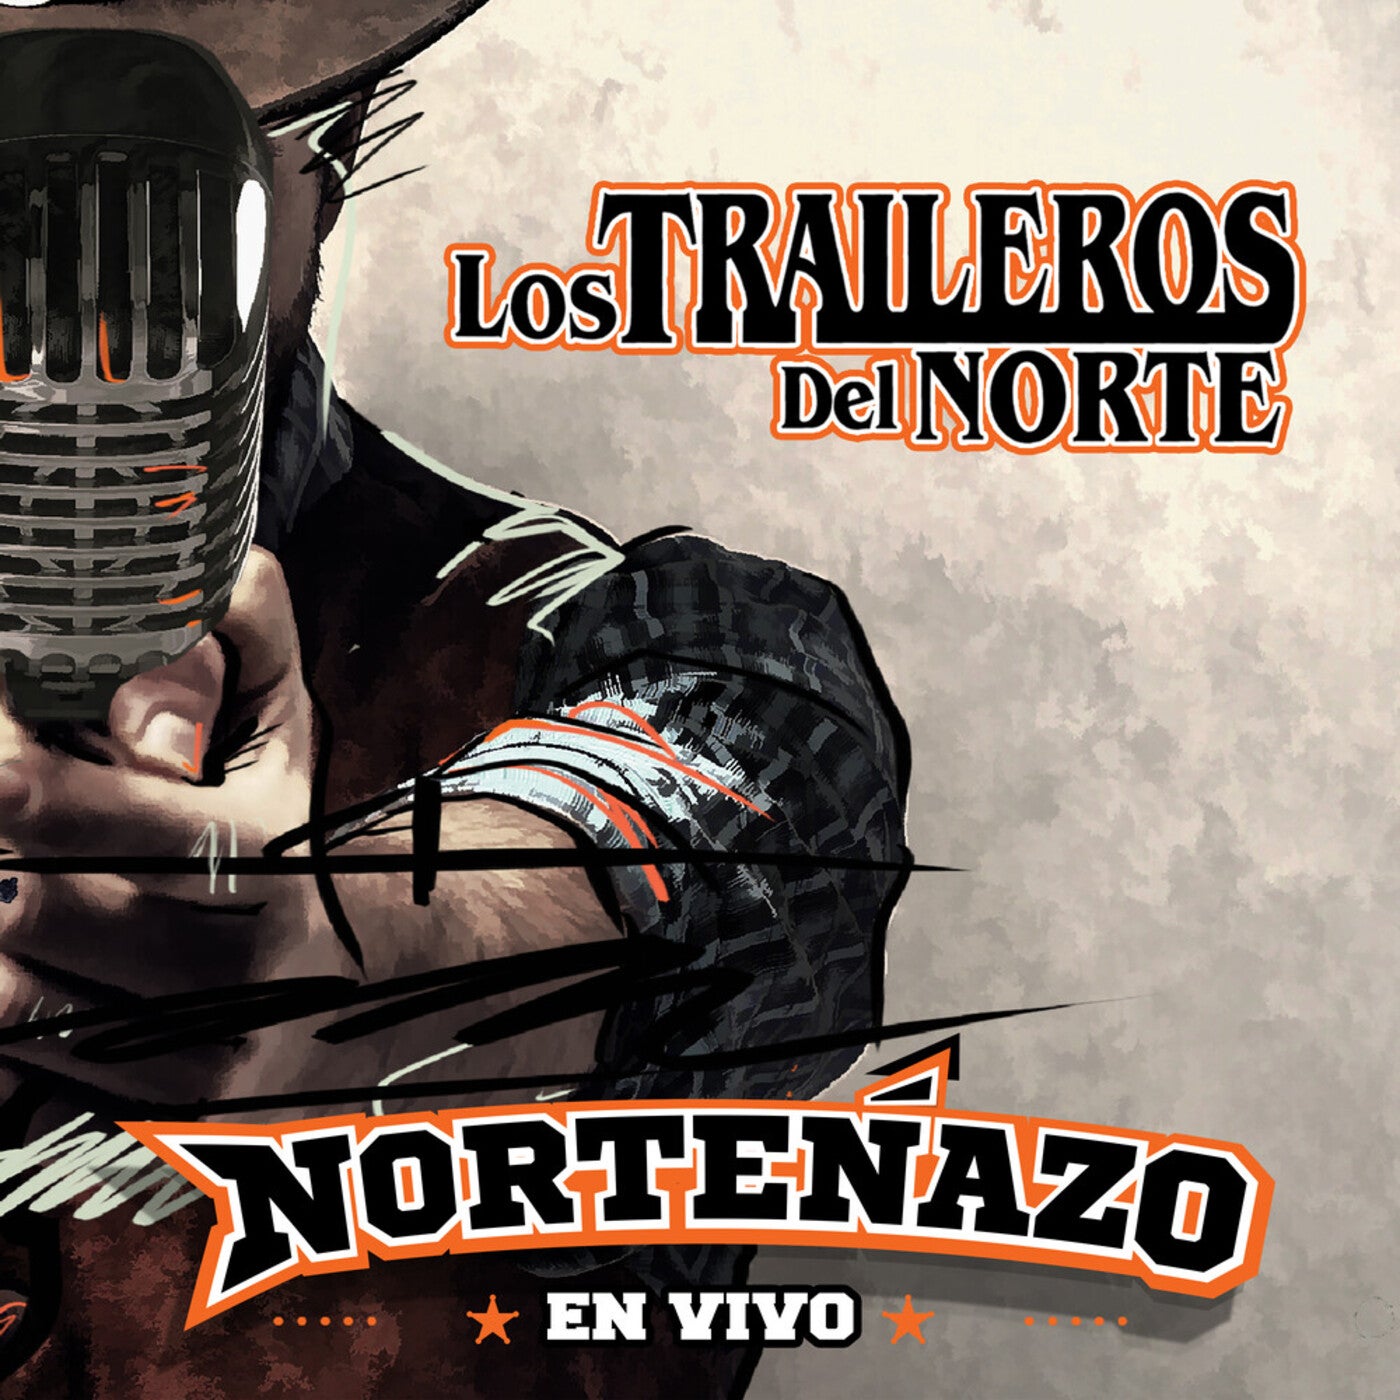 Los Traileros Del Norte (En vivo desde el Norteñazo) by Los Traileros